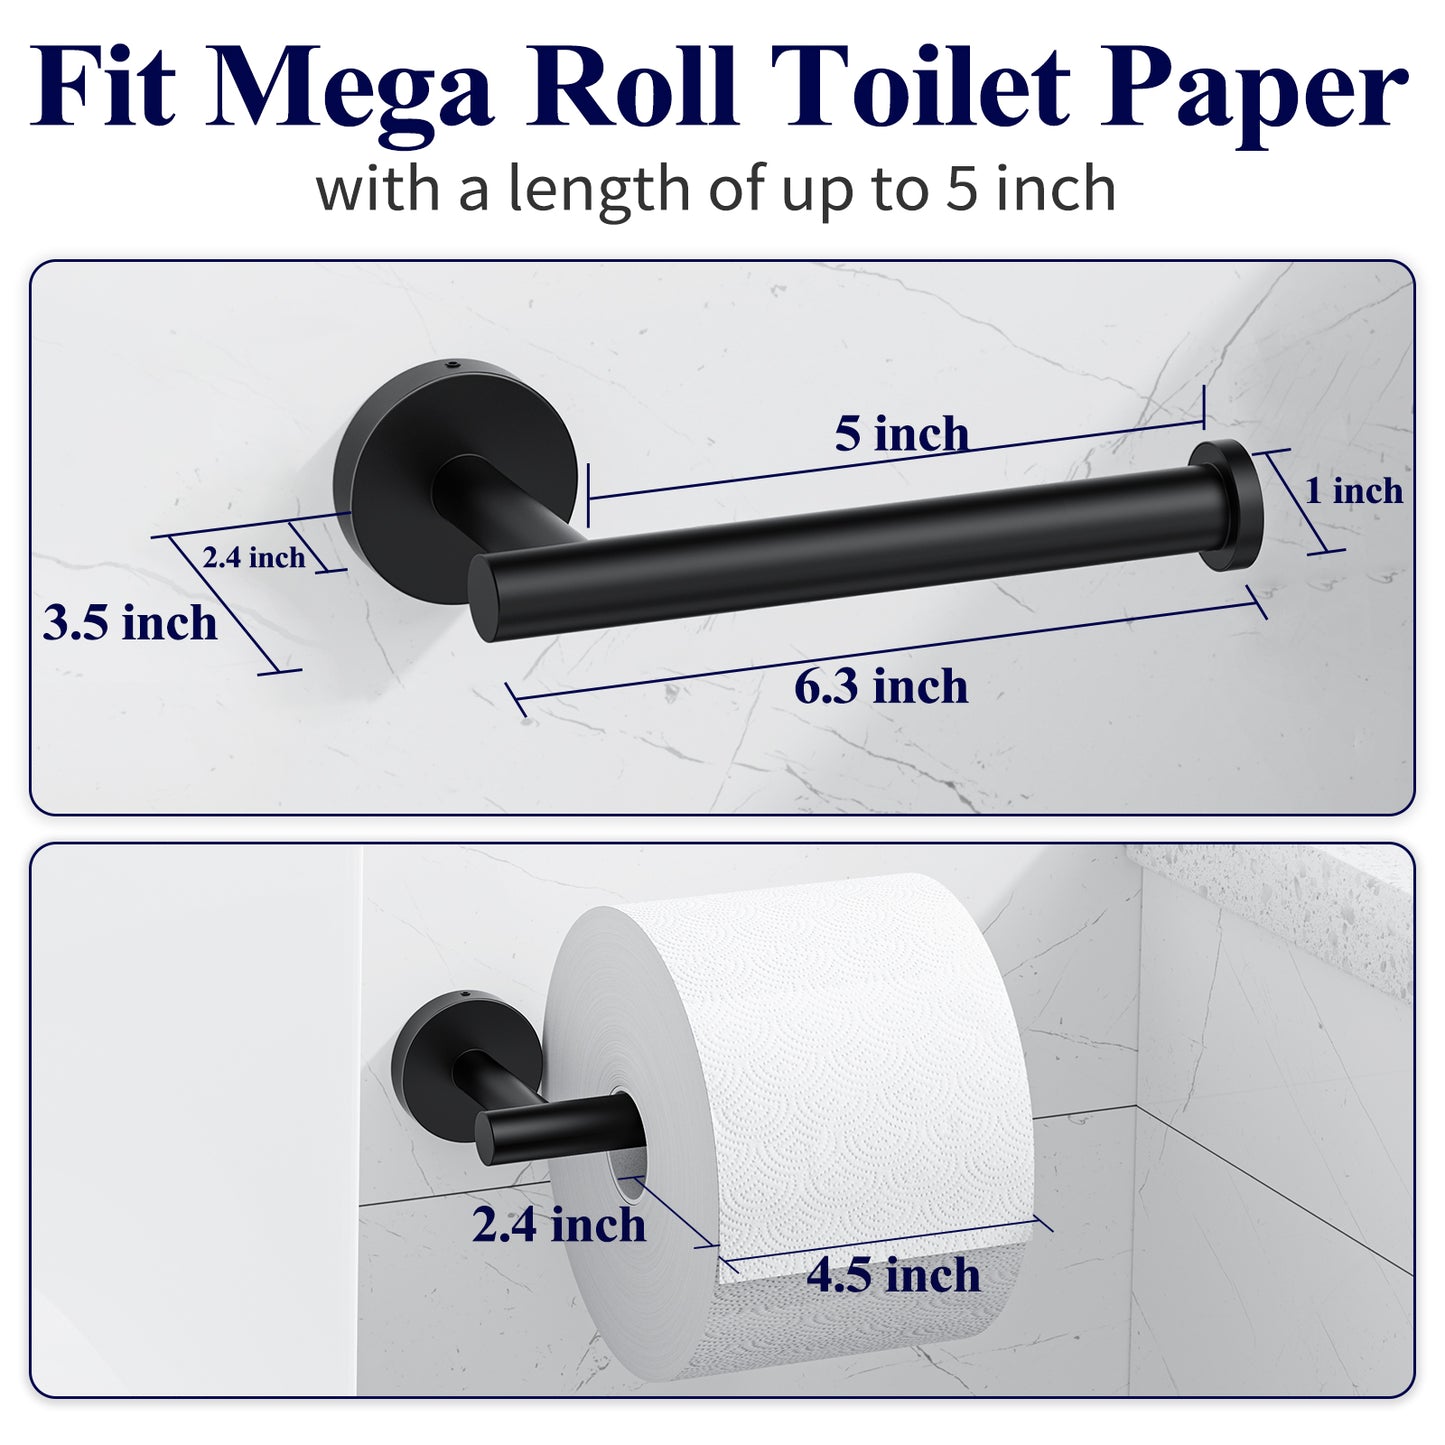 Kitsure Toilet Paper Holder Wall Mount - Sturdy Round Matte Black Toilet Paper Holder for Mega Roll, Premium 304 Stainless Steel Toilet Paper Roll Holder for Bathroom, Washroom（469）